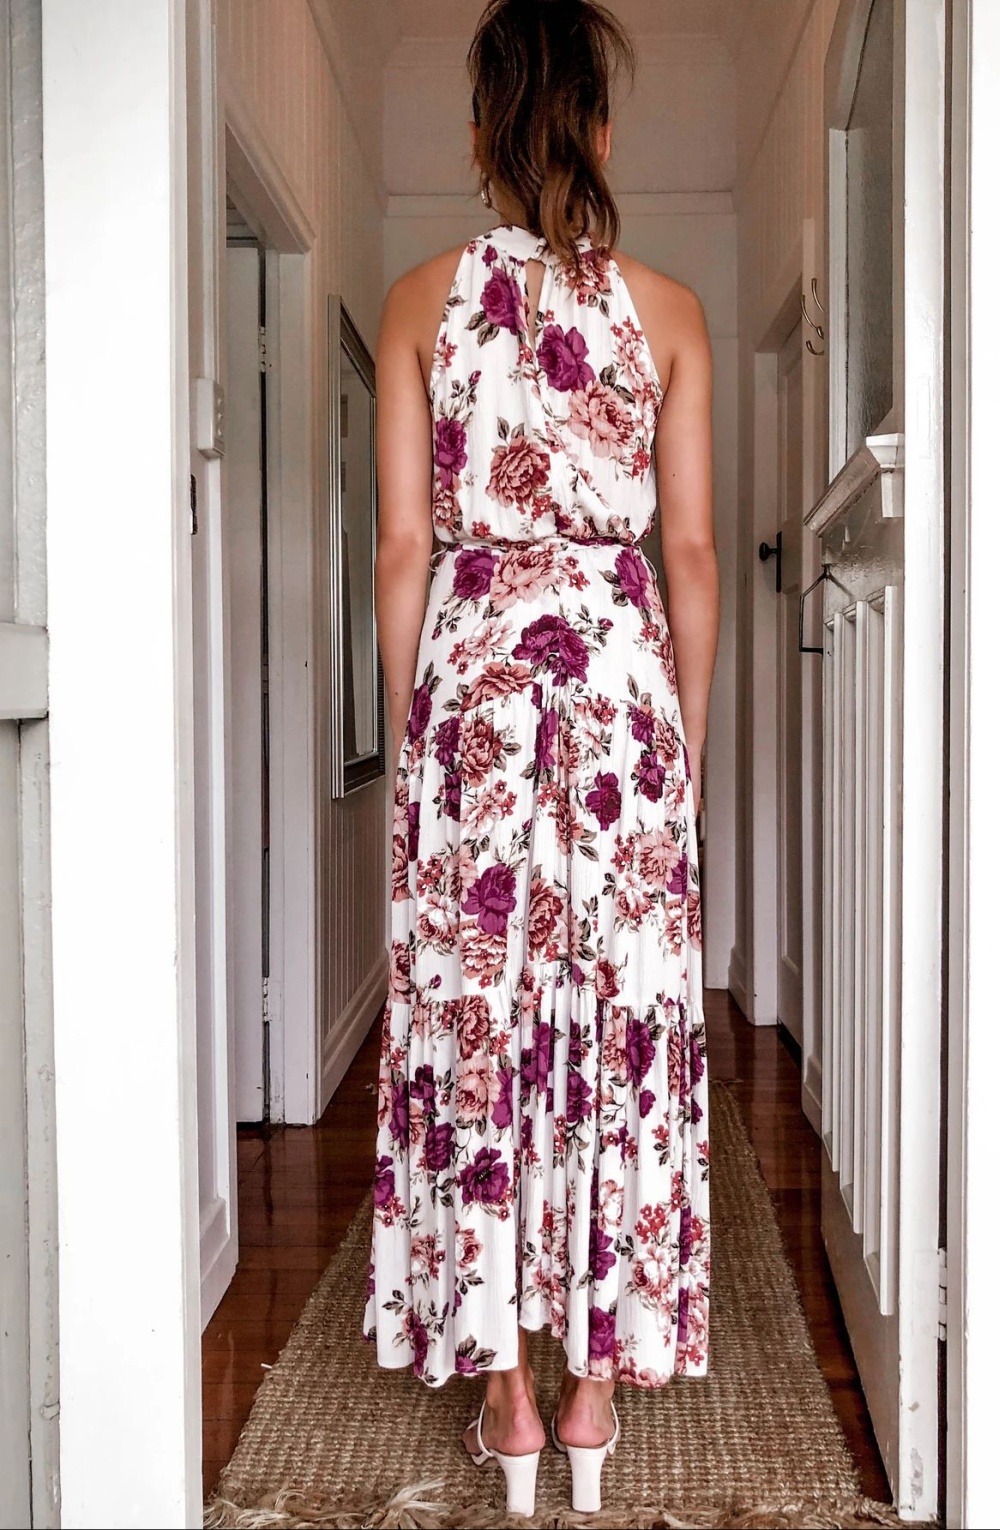 Printing halter long dress slim dress for women